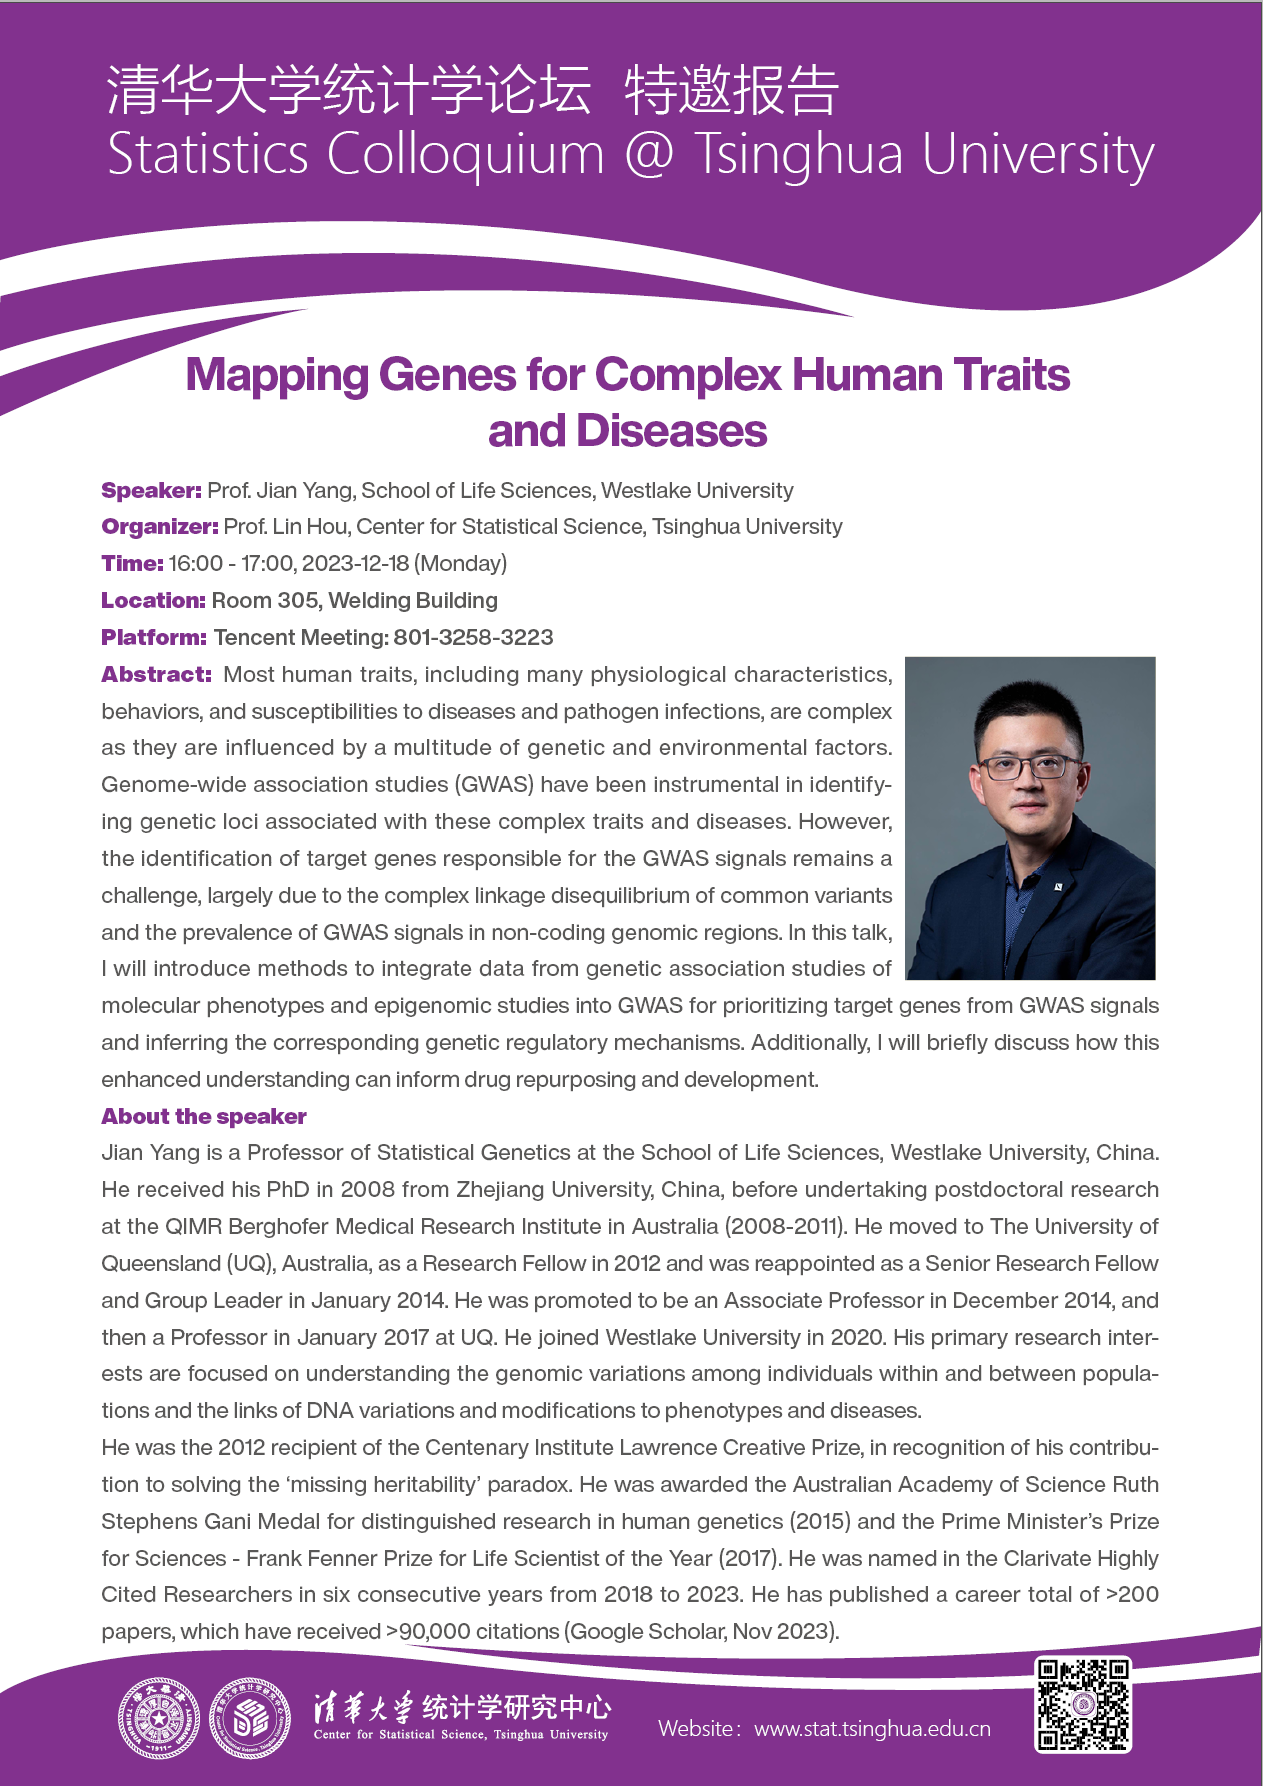 【学术活动】Mapping Genes for Complex Human Traits and Diseases